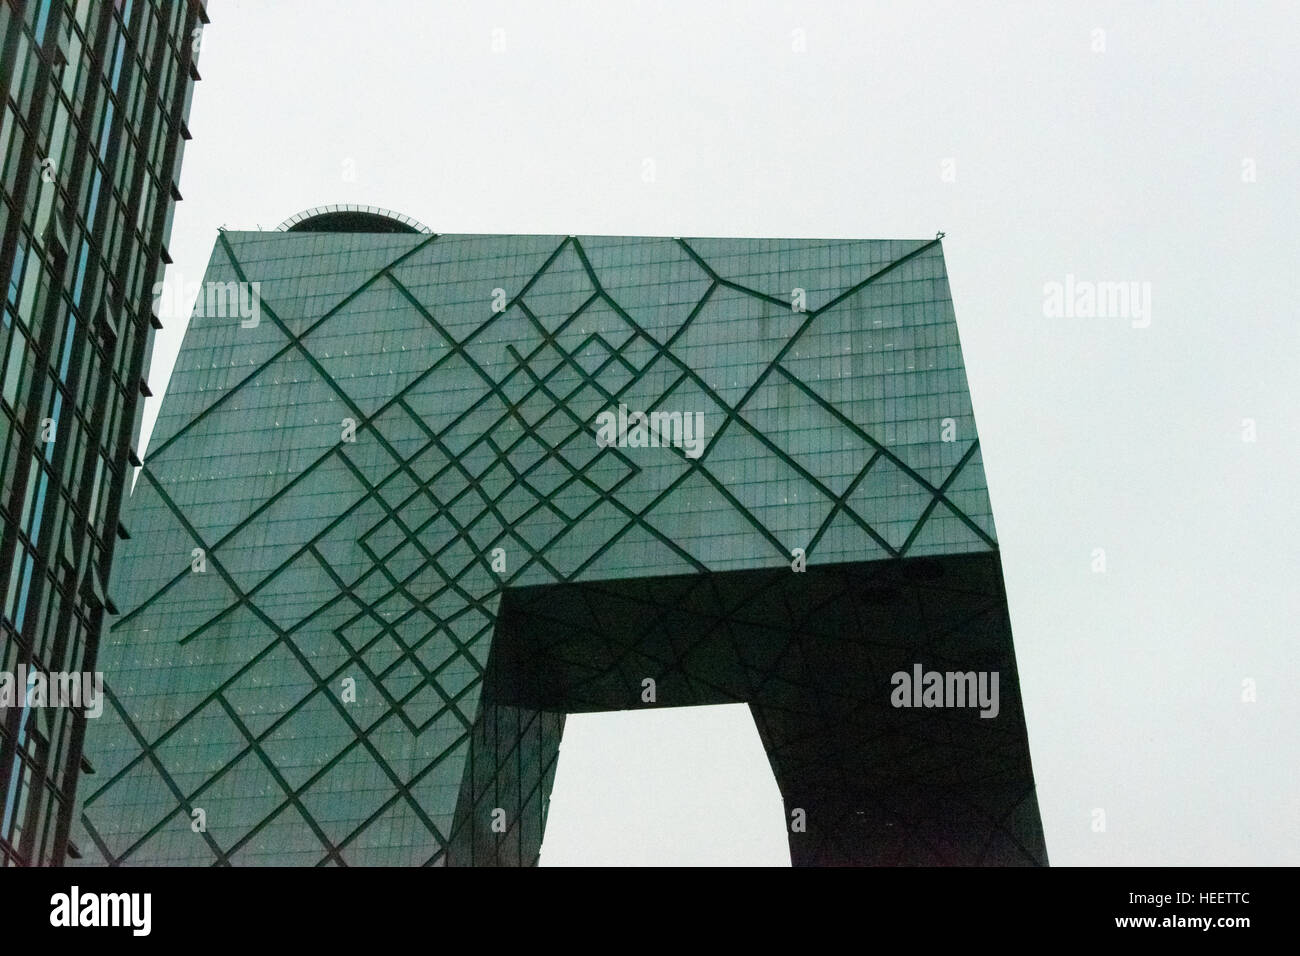 Siège CCTV et d'autres augmentations de CBD (Central Business District), Beijing, Chine Banque D'Images